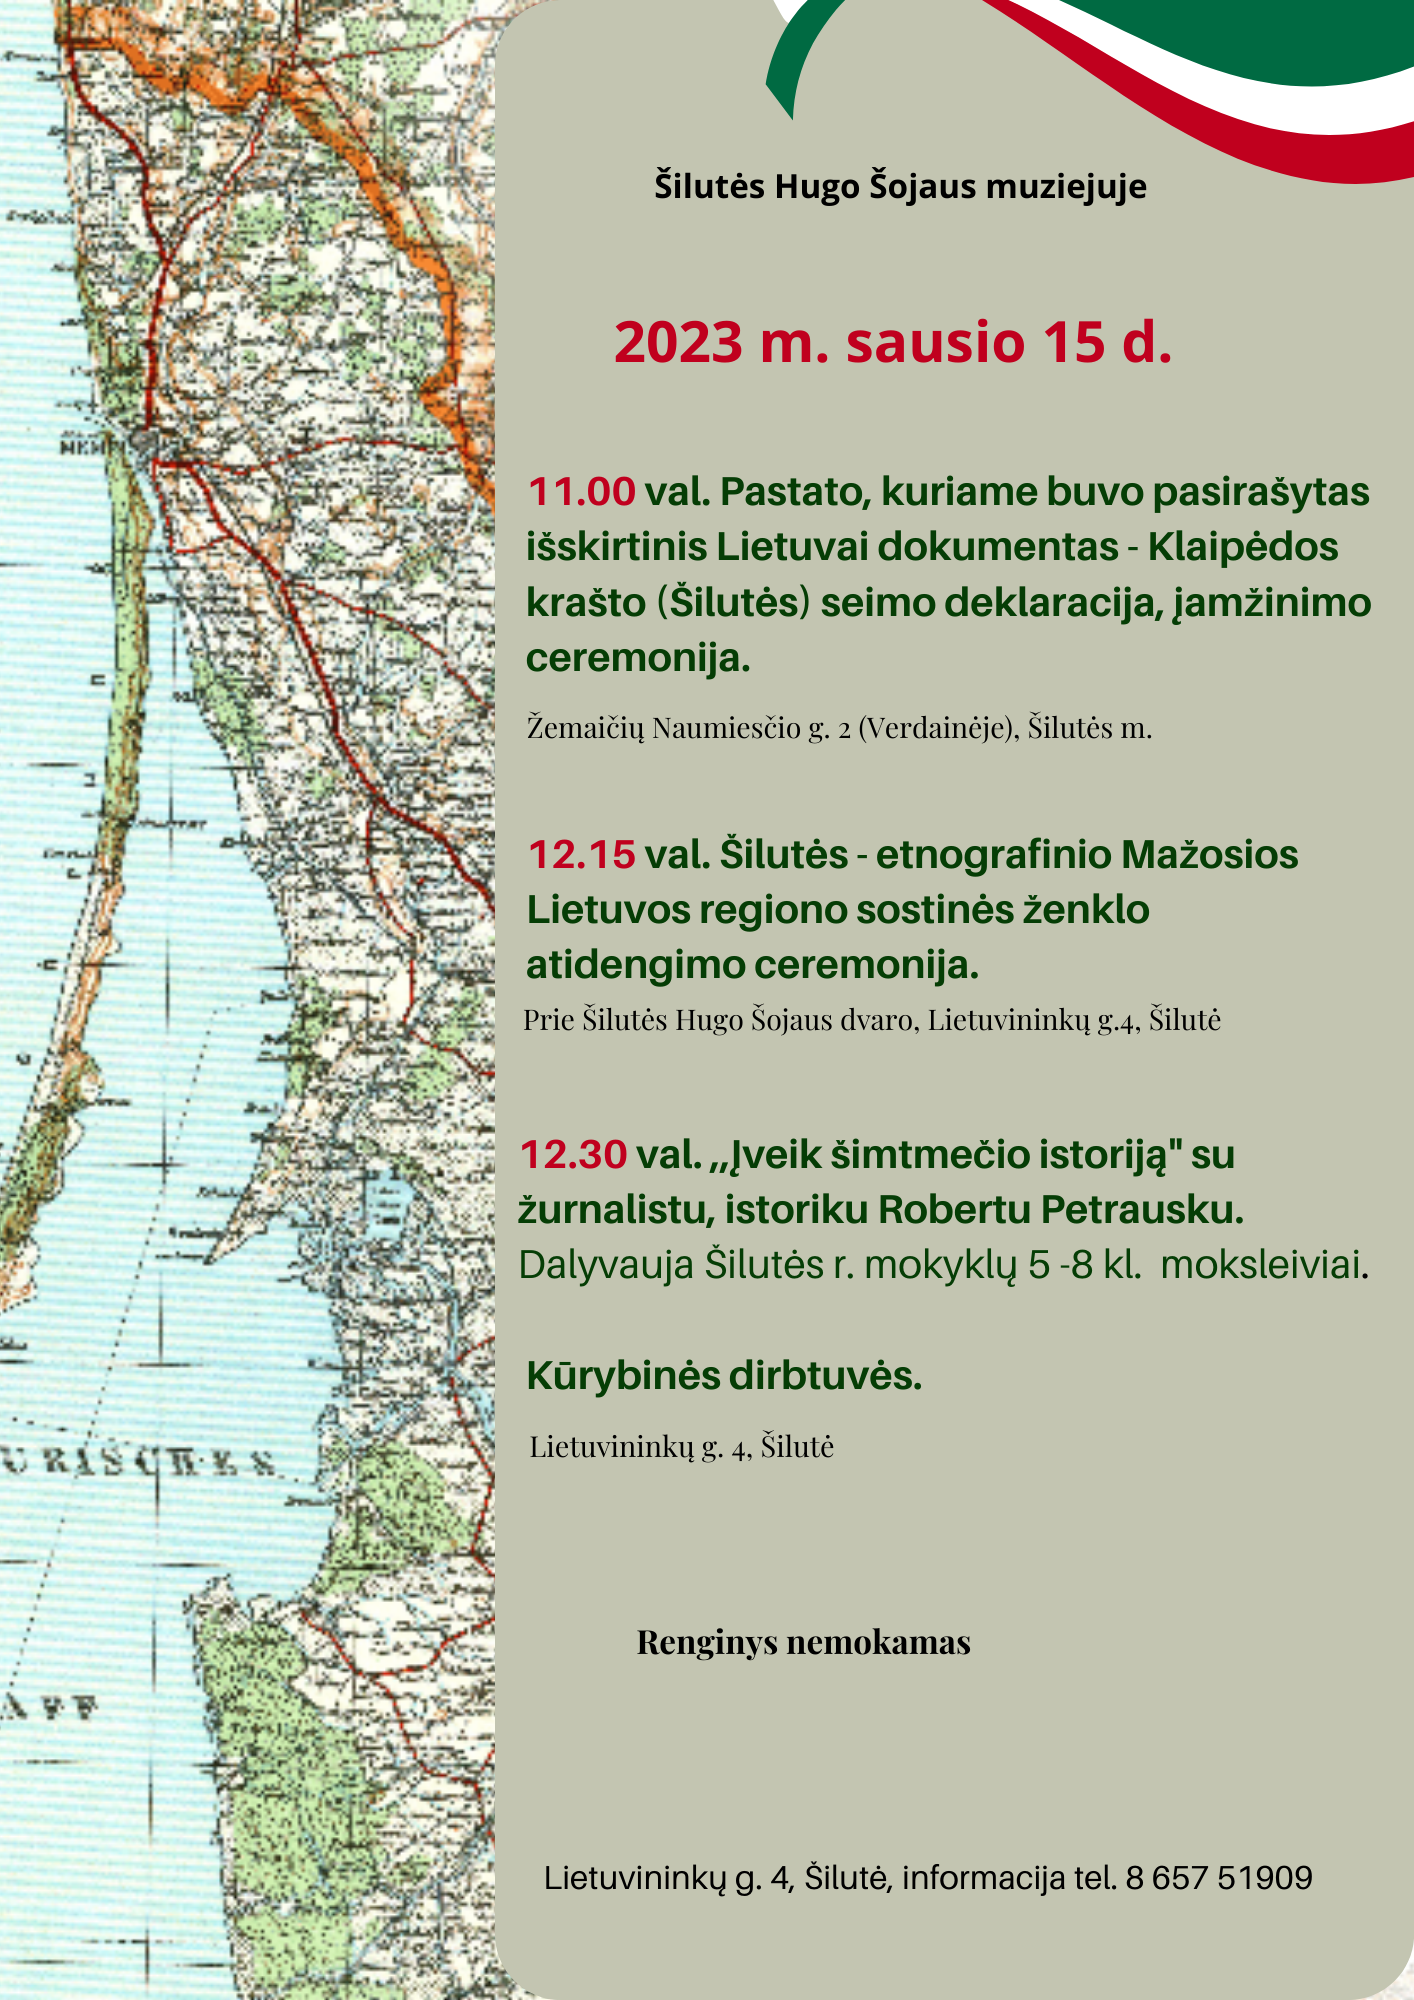 Kviečiame į Klaipėdos krašto prijungimo šimtmečio minėjimo renginius